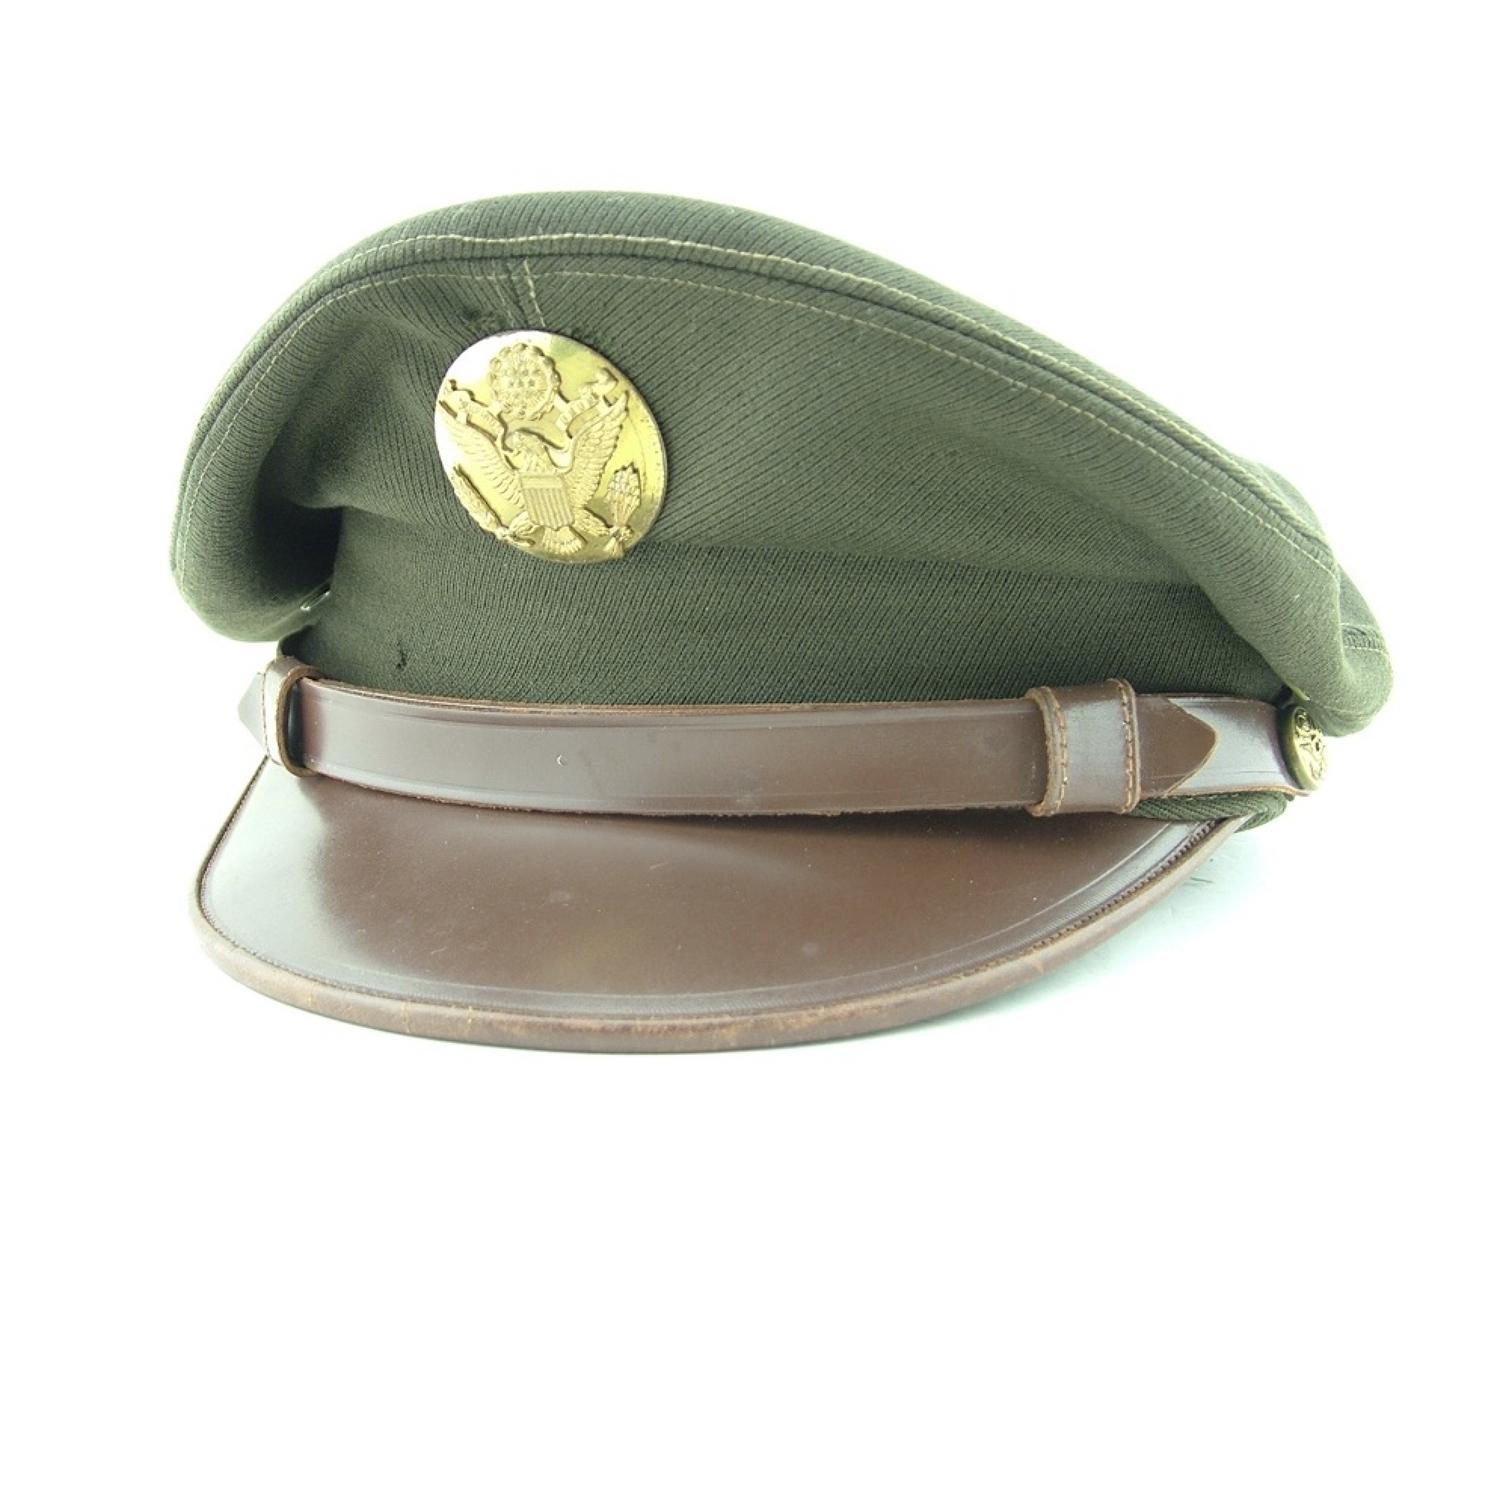 USAAF enlisted mens' visor cap